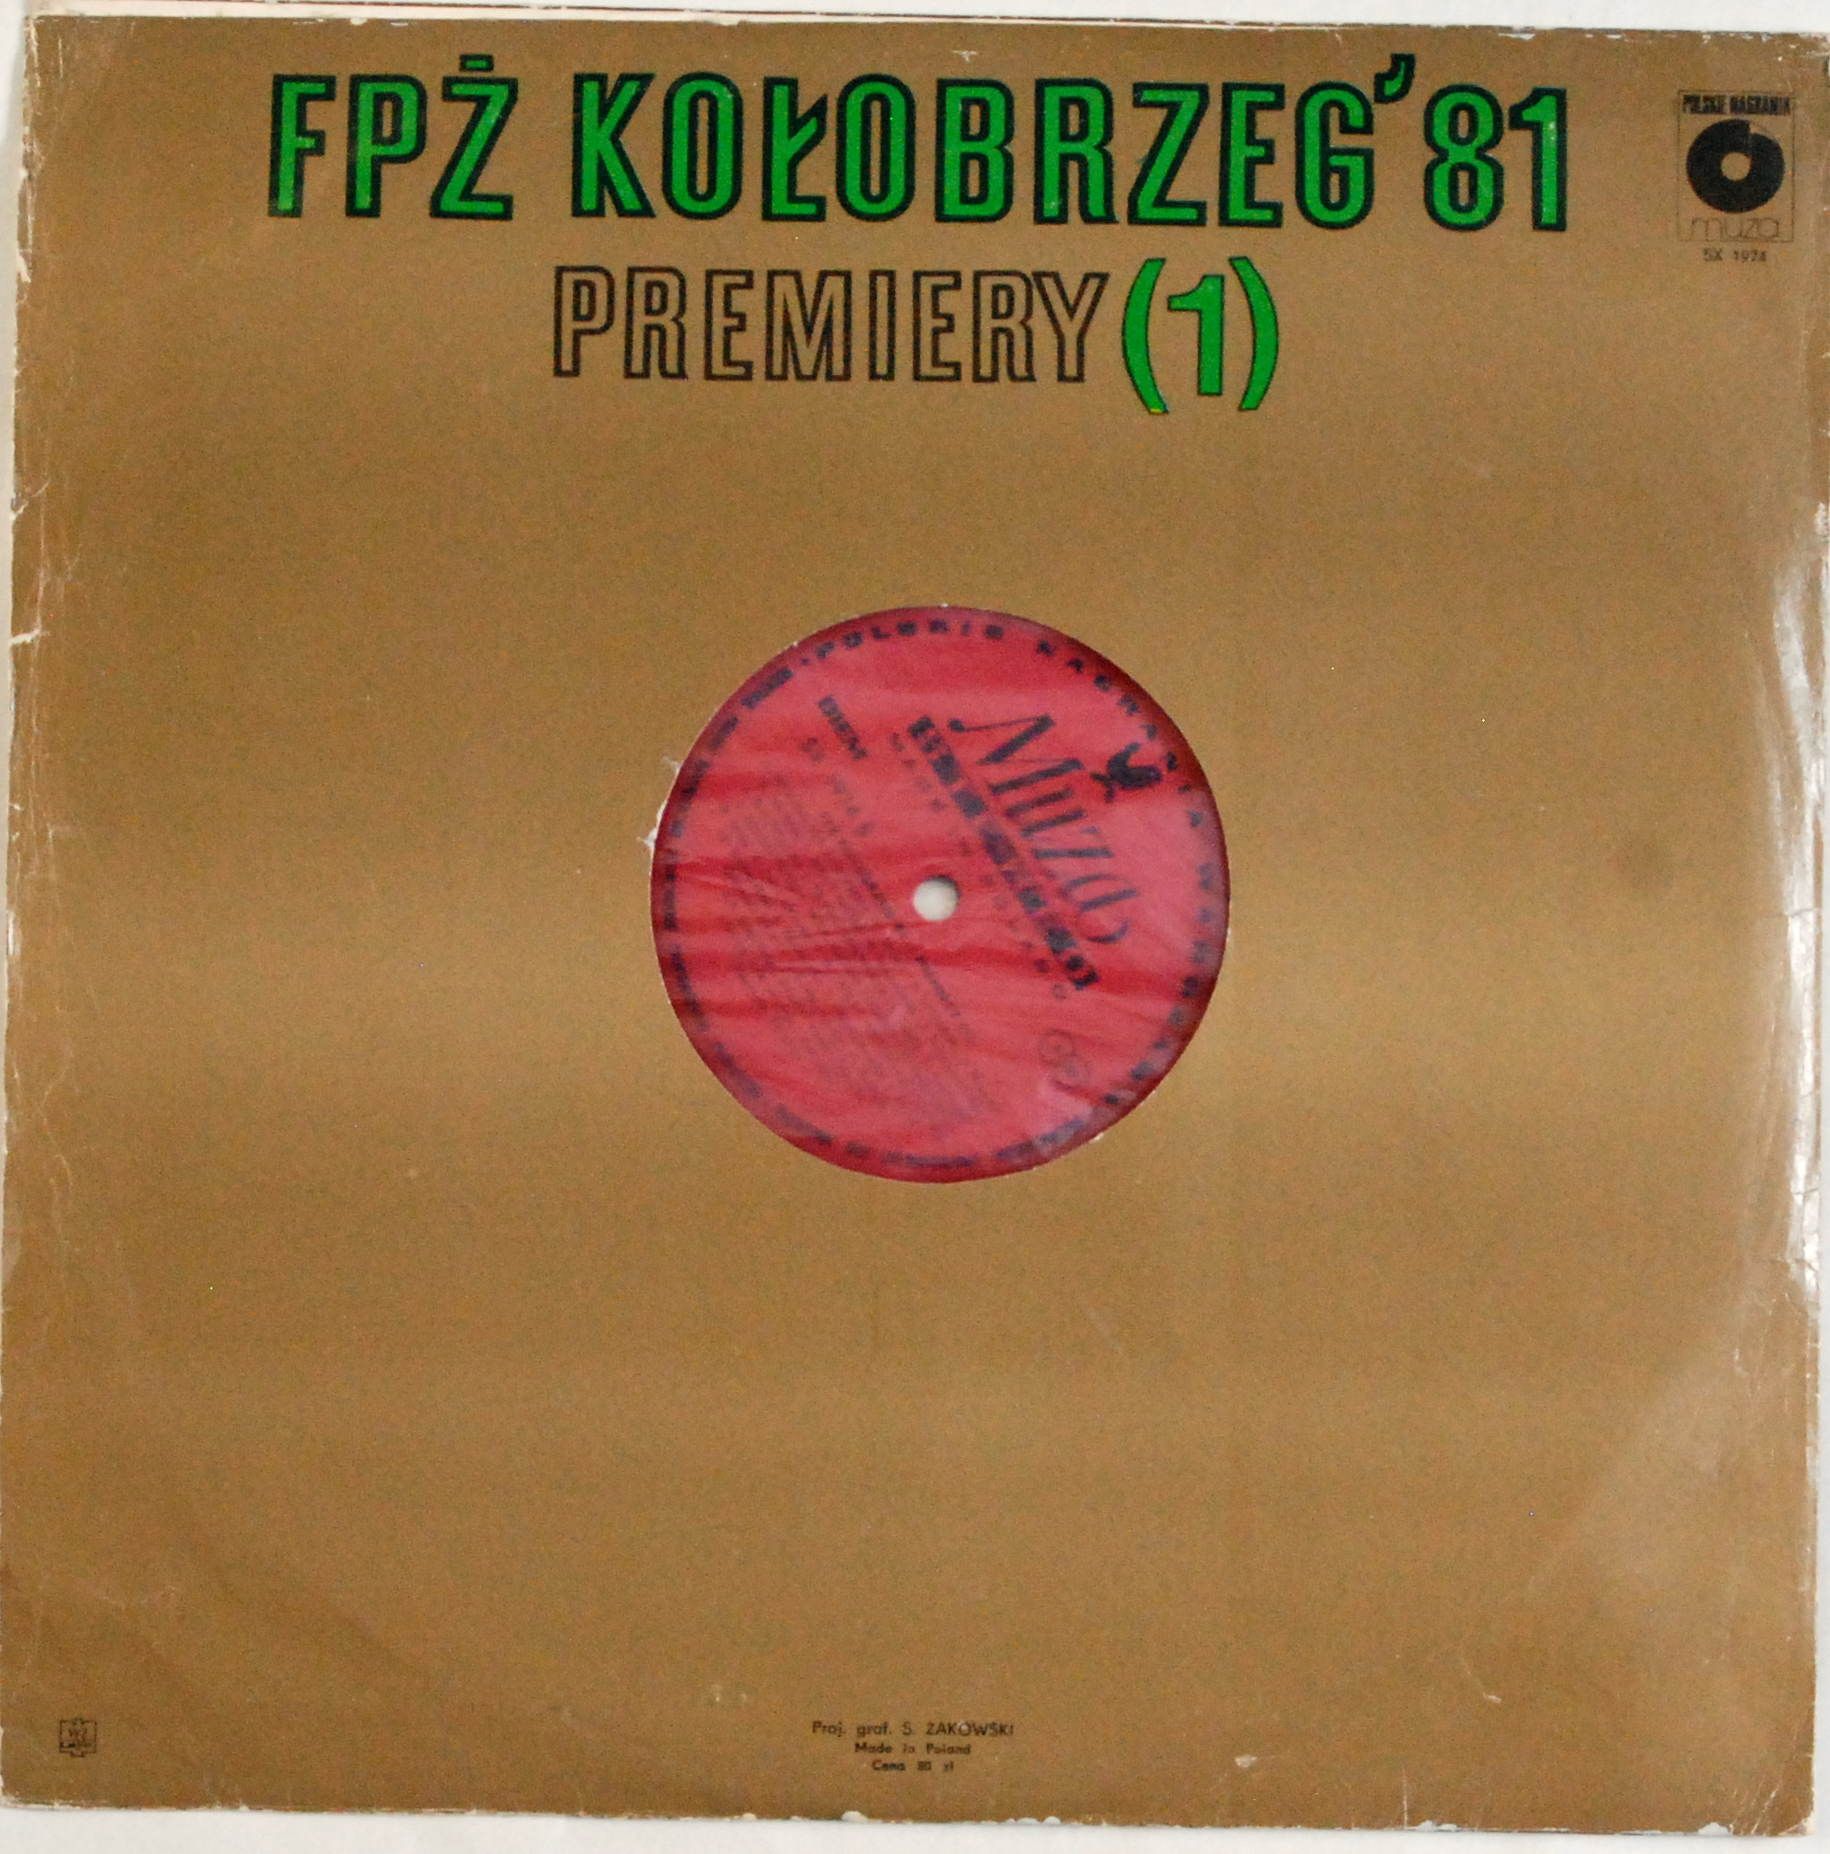 VA - FPŻ Kołobrzeg' 81 Premiery (1) (SX 1974)